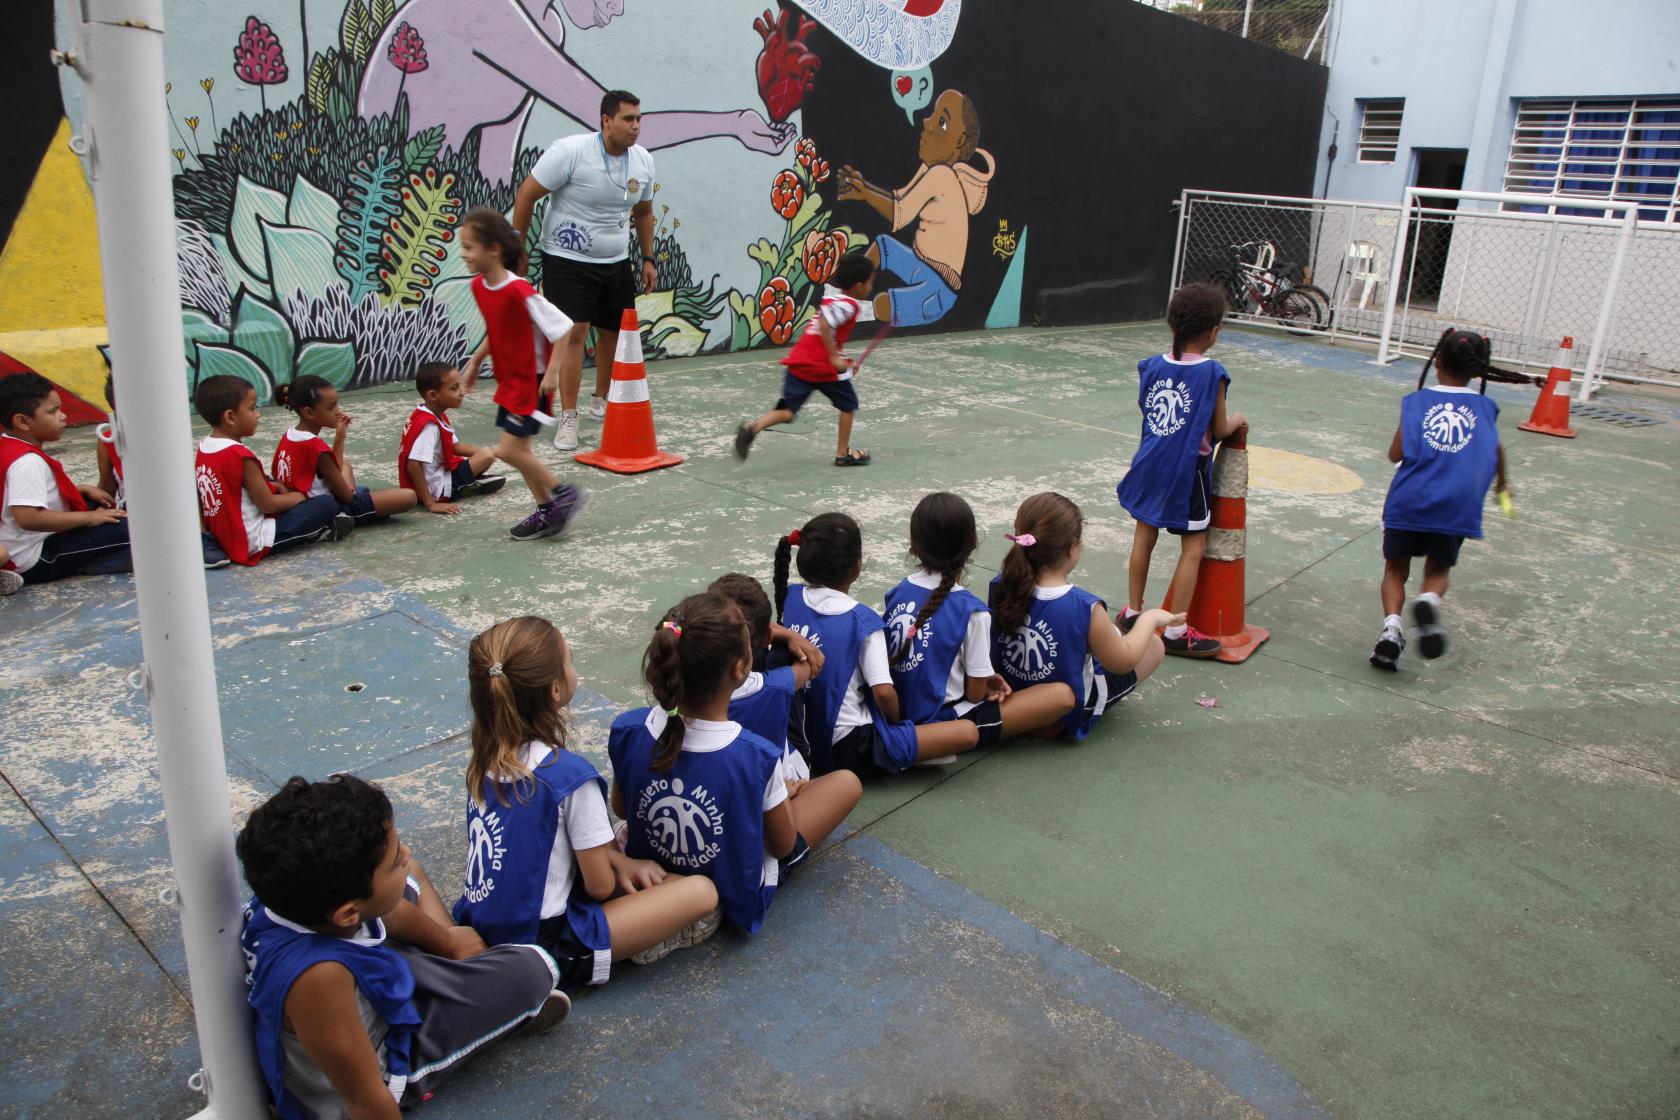 Crianças em pátio de escola pública durante atividade física, com professor ao fundo. Crianças estão distribuídas em duas filas e usam bola para a atividade.